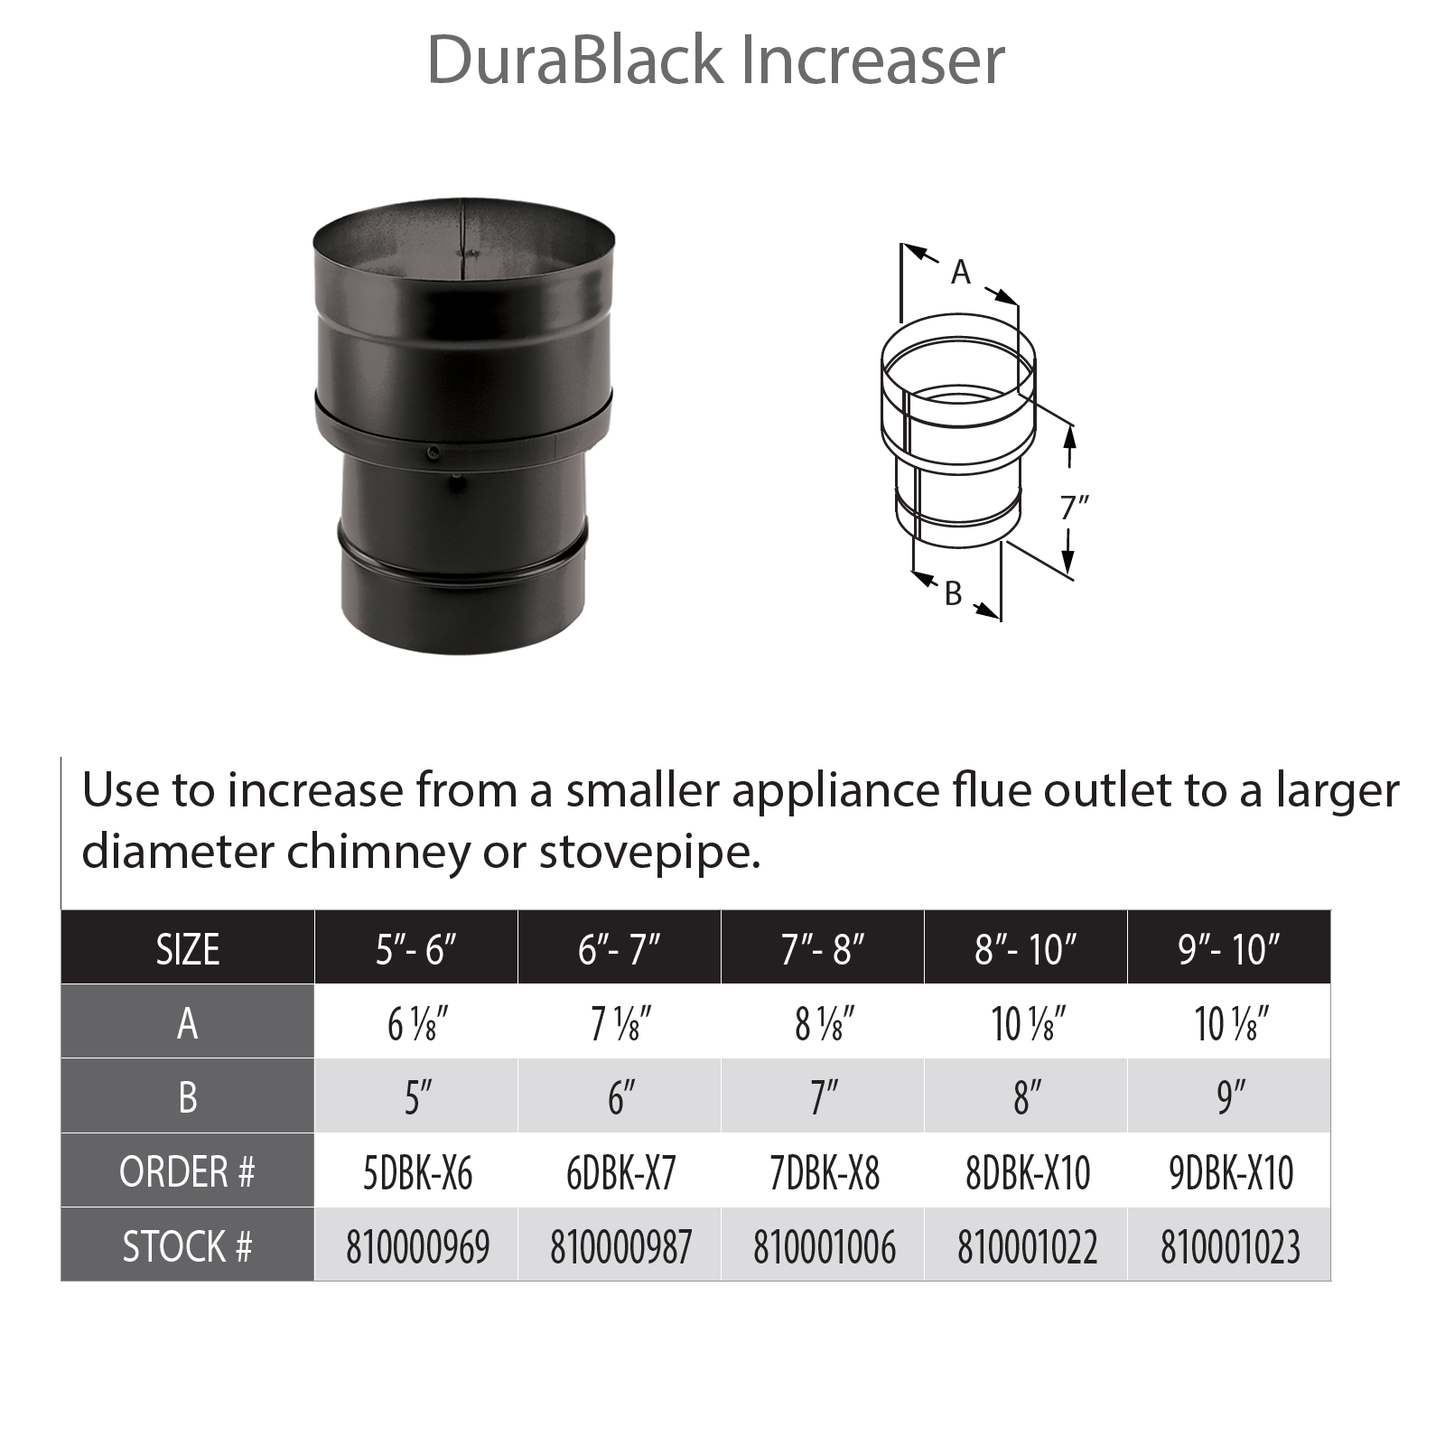 DuraVent DuraBlack 8" Diameter Black Increaser 7" - 8" | 7DBK-X8